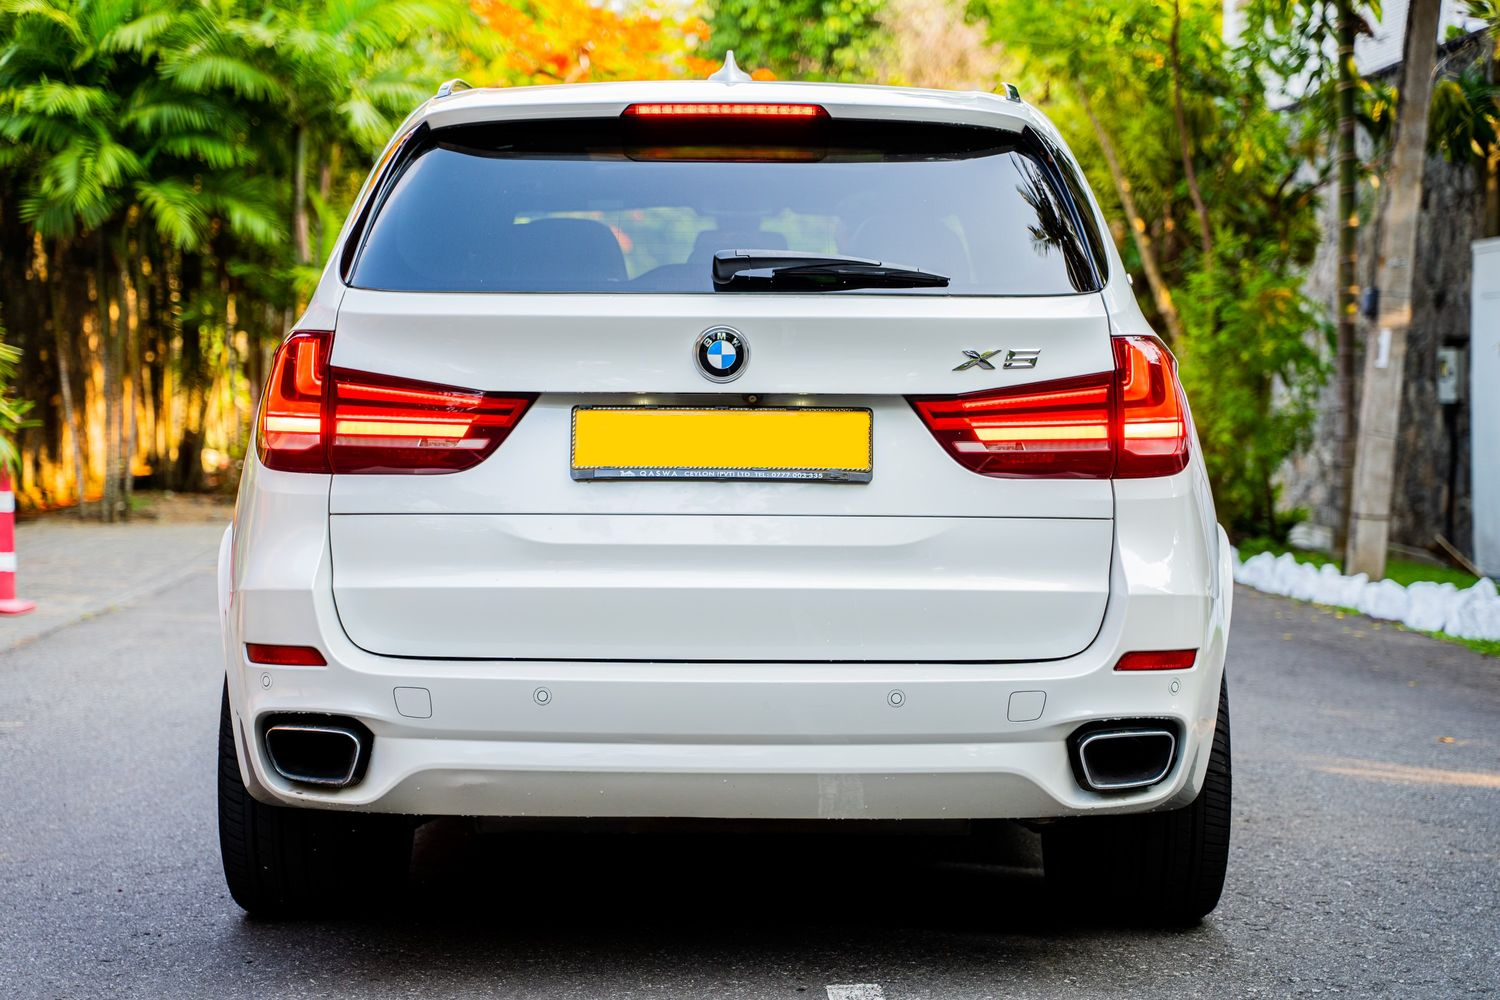 BMW X5 rear view